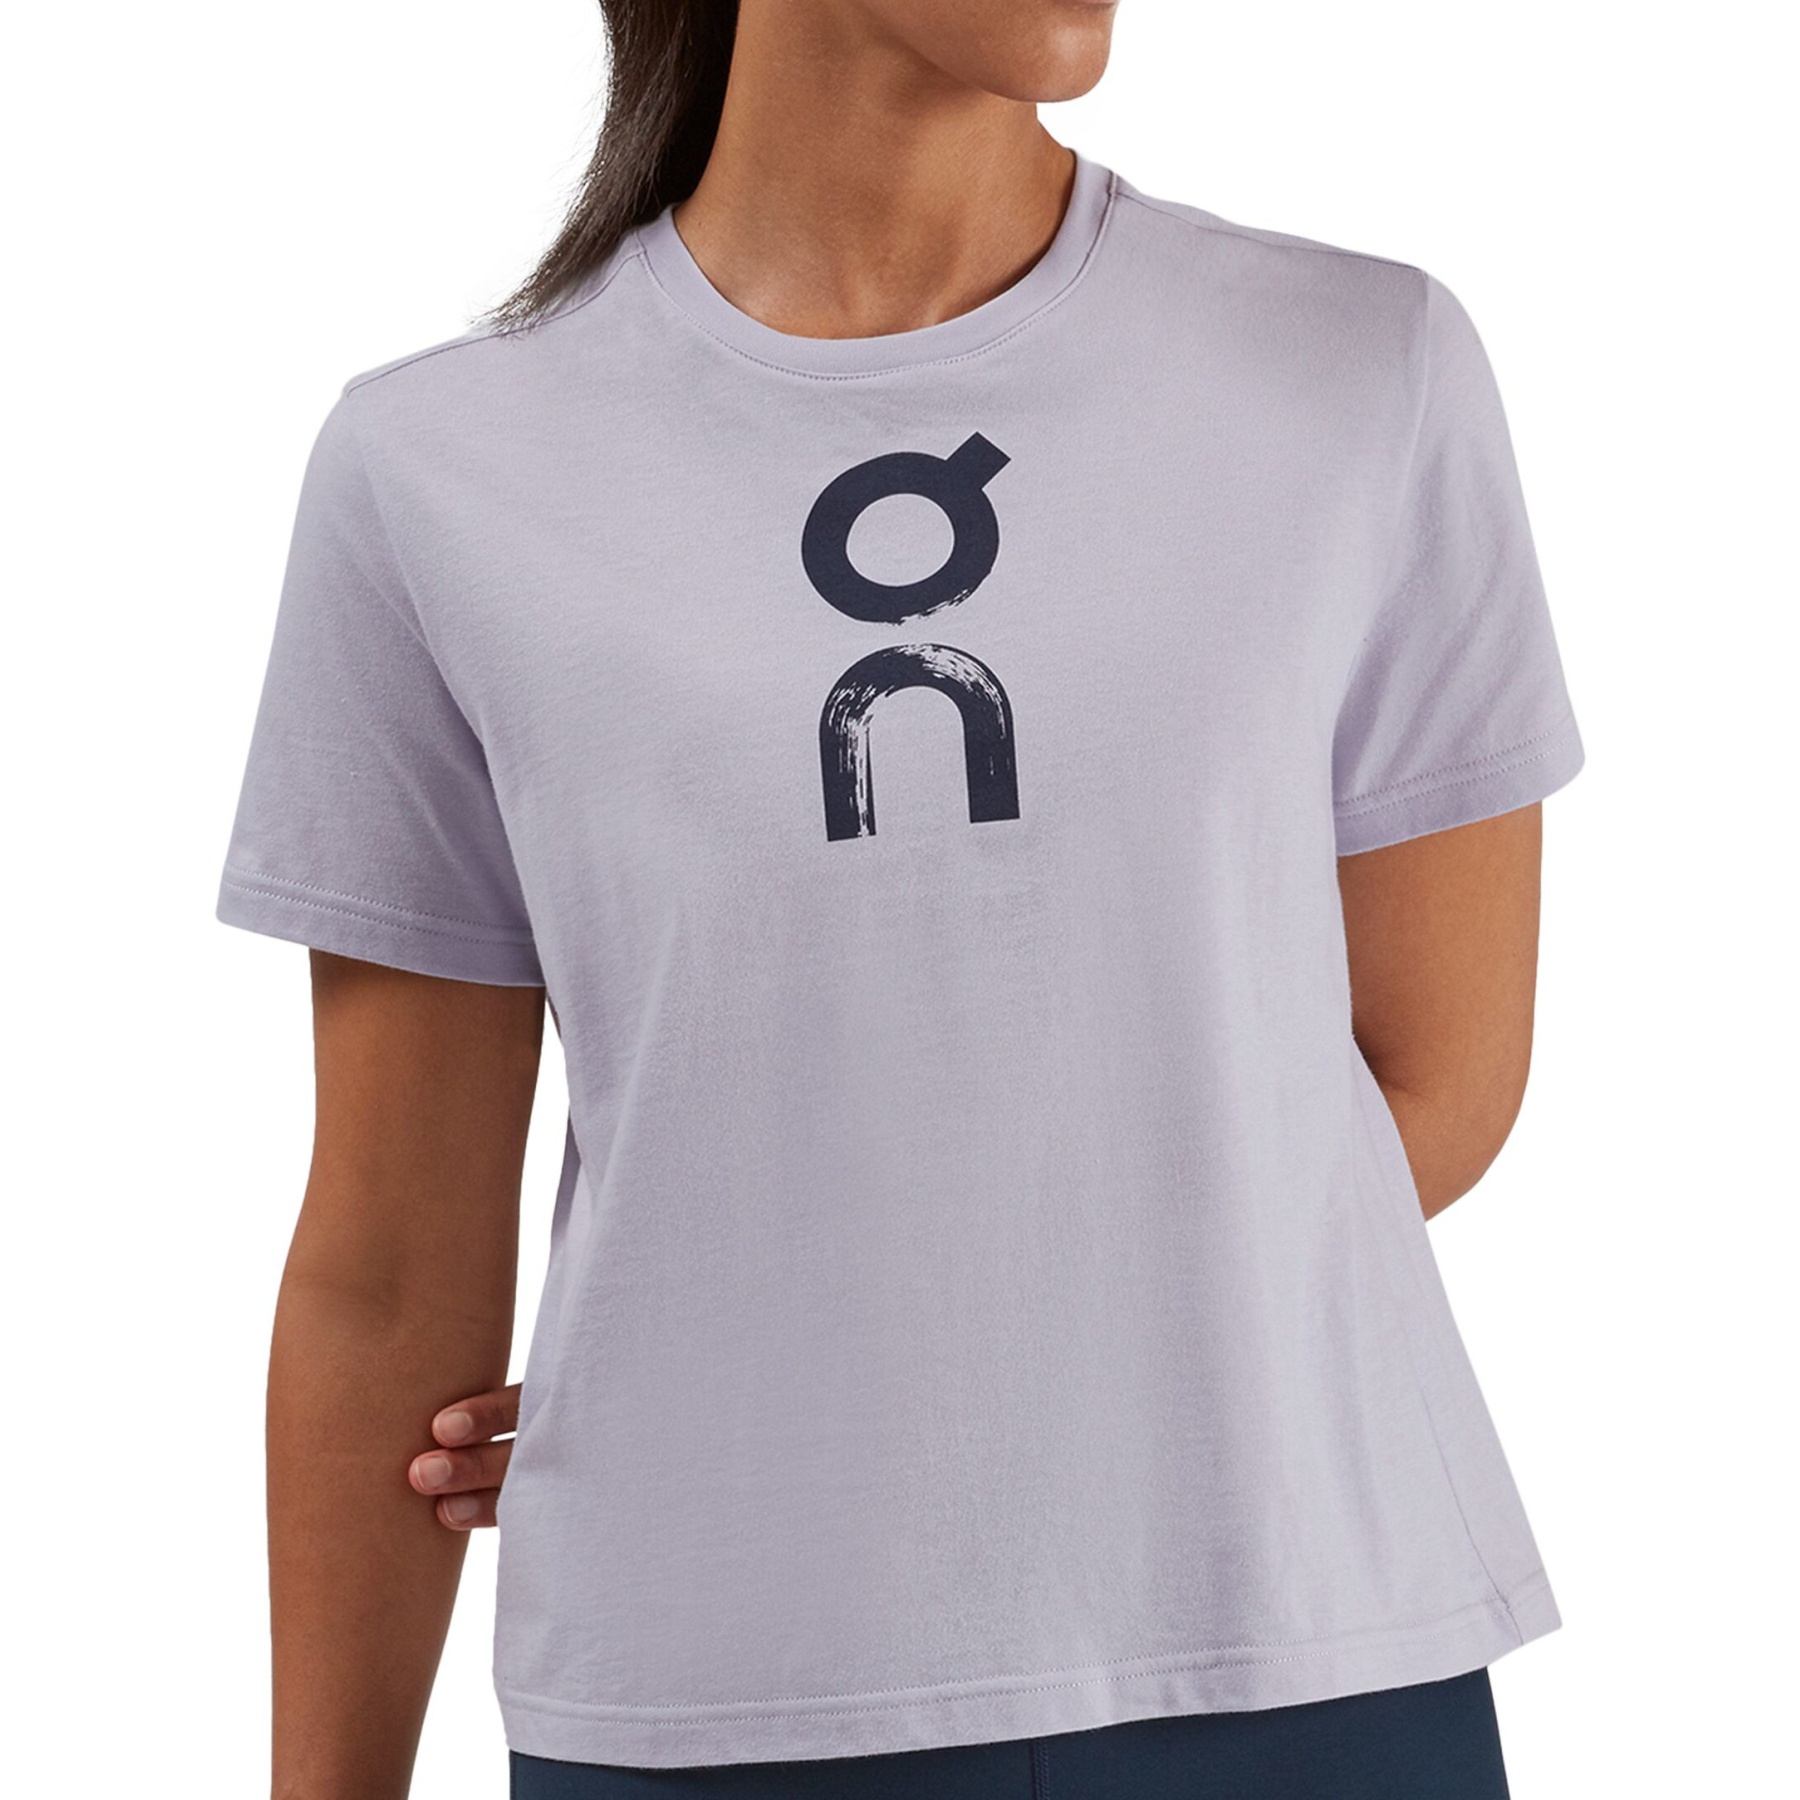 Produktbild von On Graphic-T Damen T-Shirt - Lilac